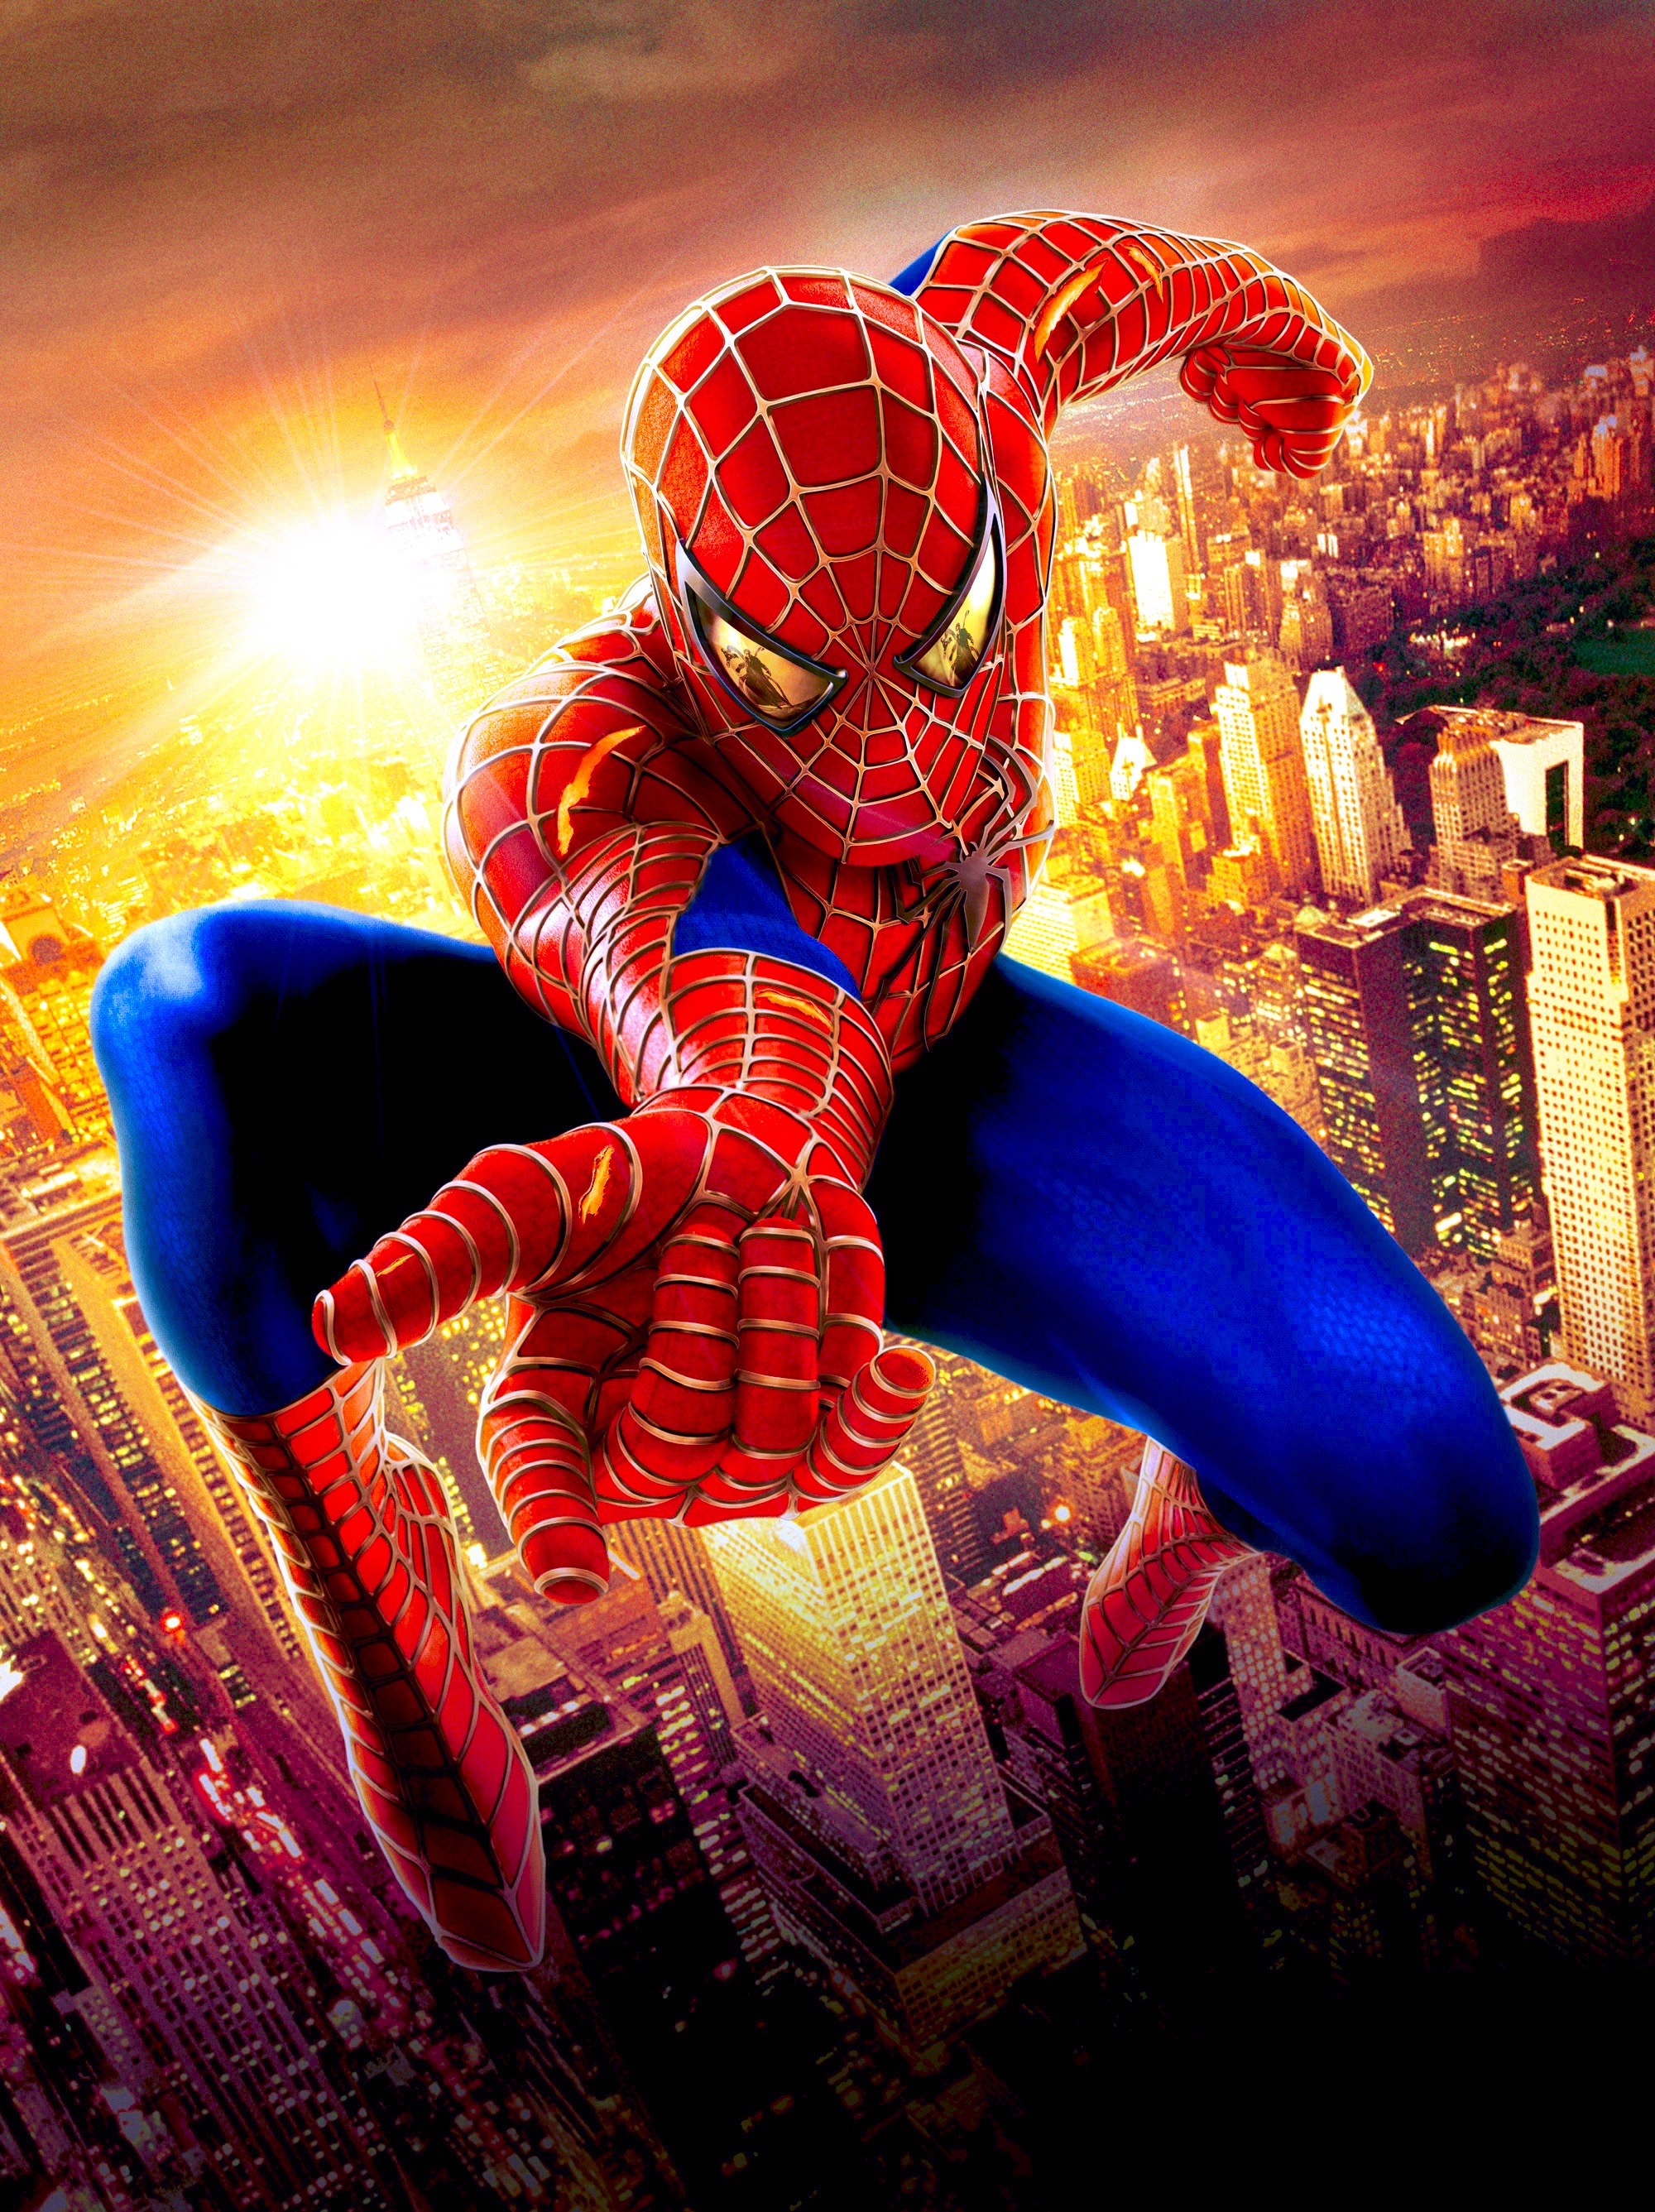 the amazing spider man movie free download putlockers